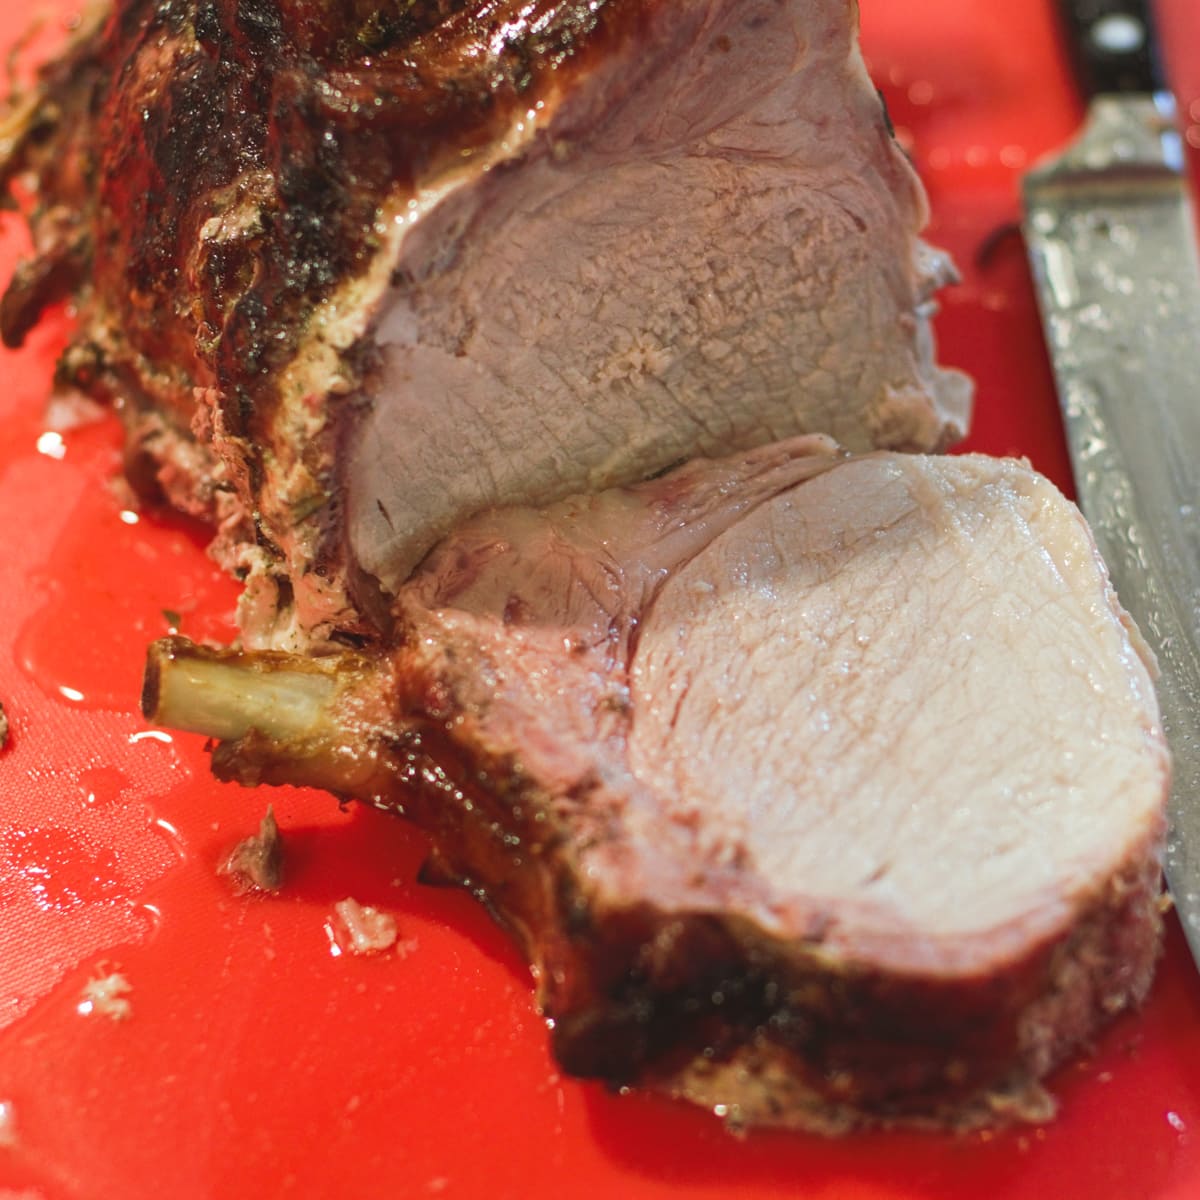 Pork roast being sliced on a cutting board.